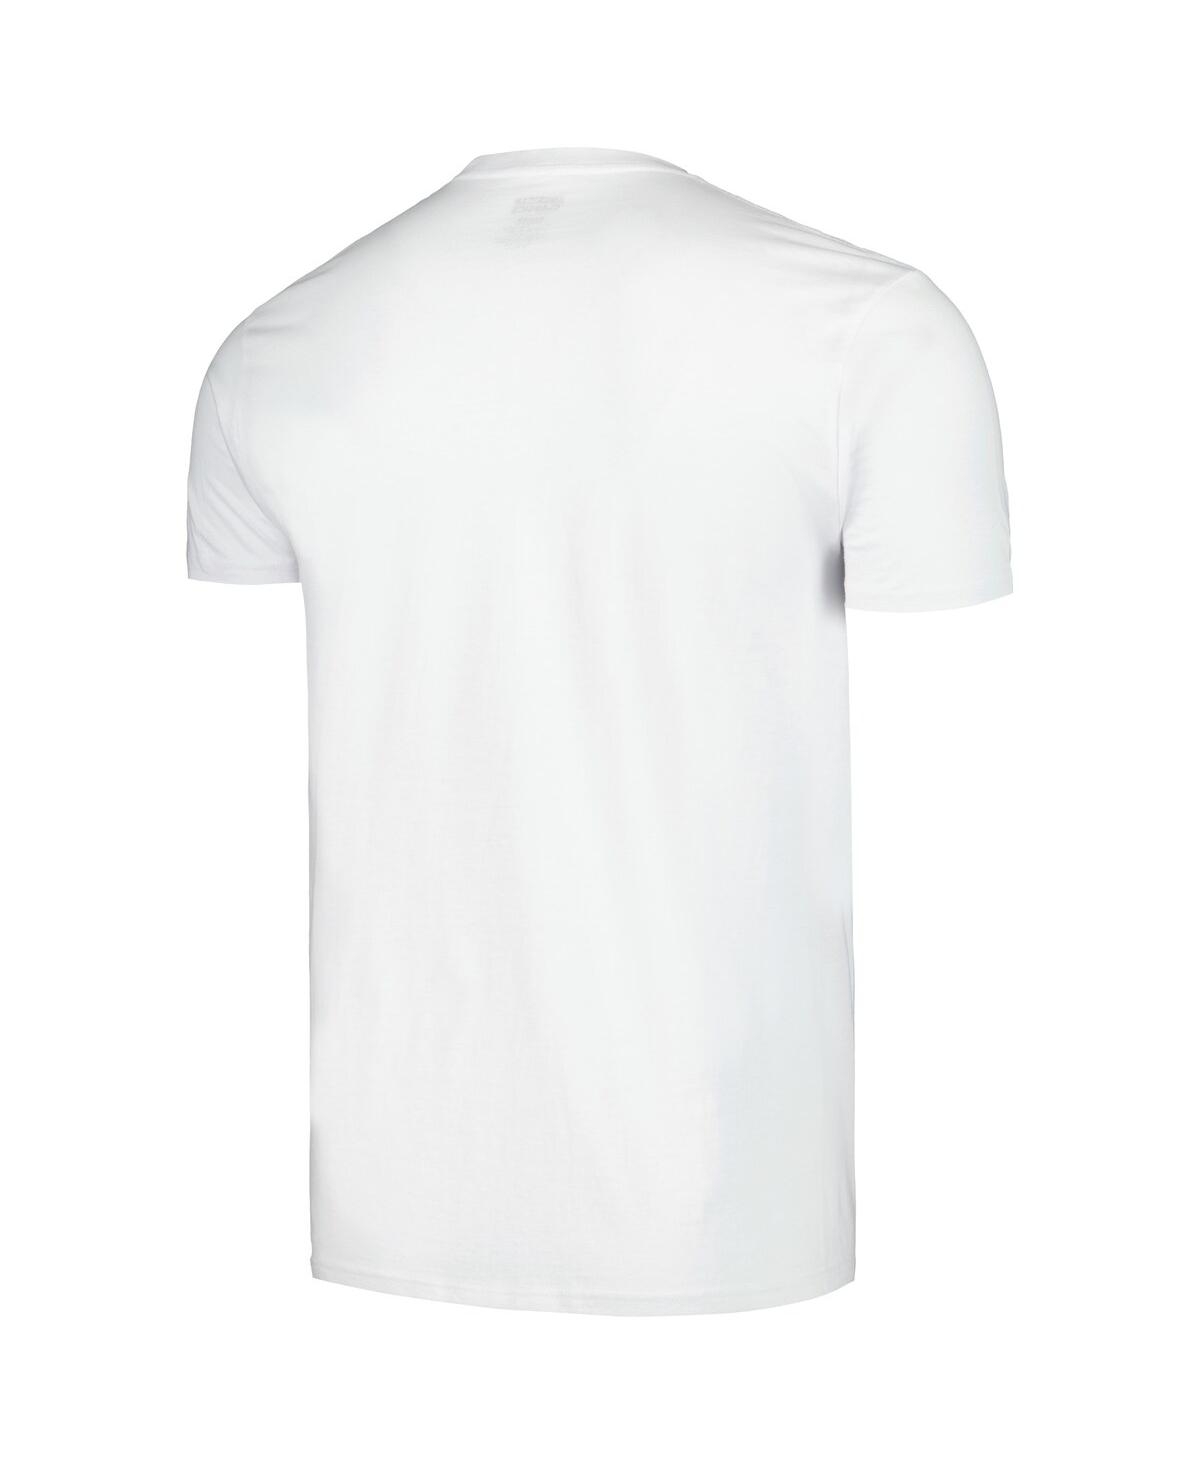 Shop American Classics Men's White Slash Skull Boxes T-shirt